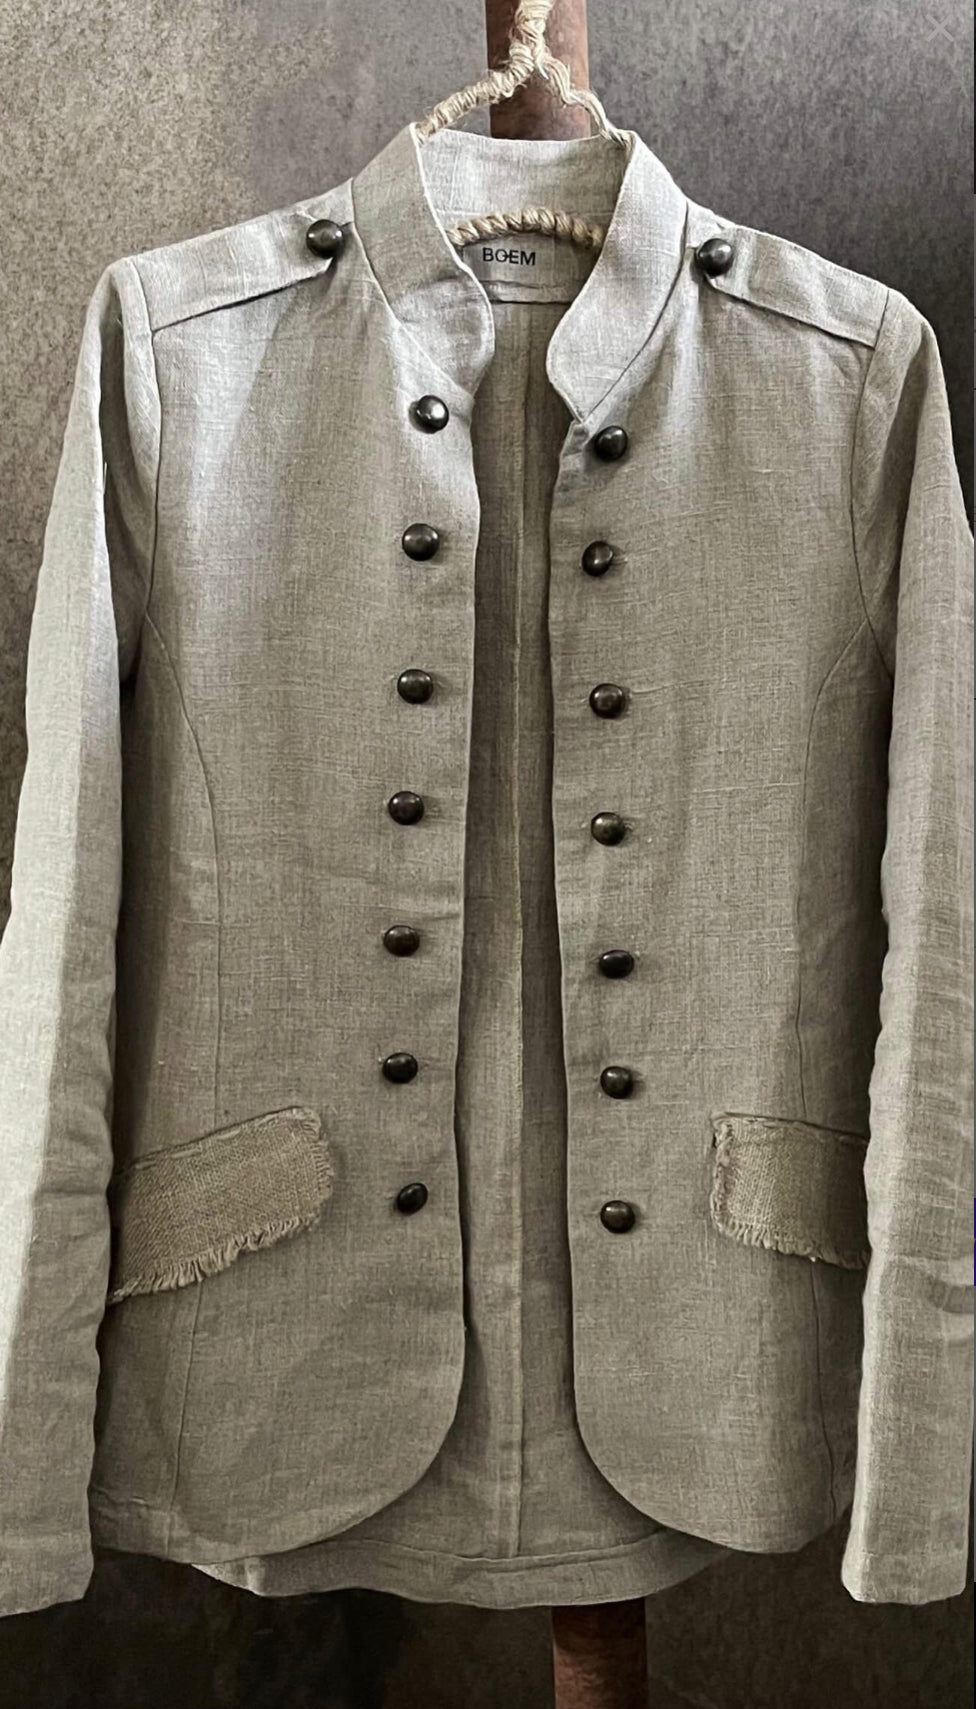 Boem Linen militia jacket